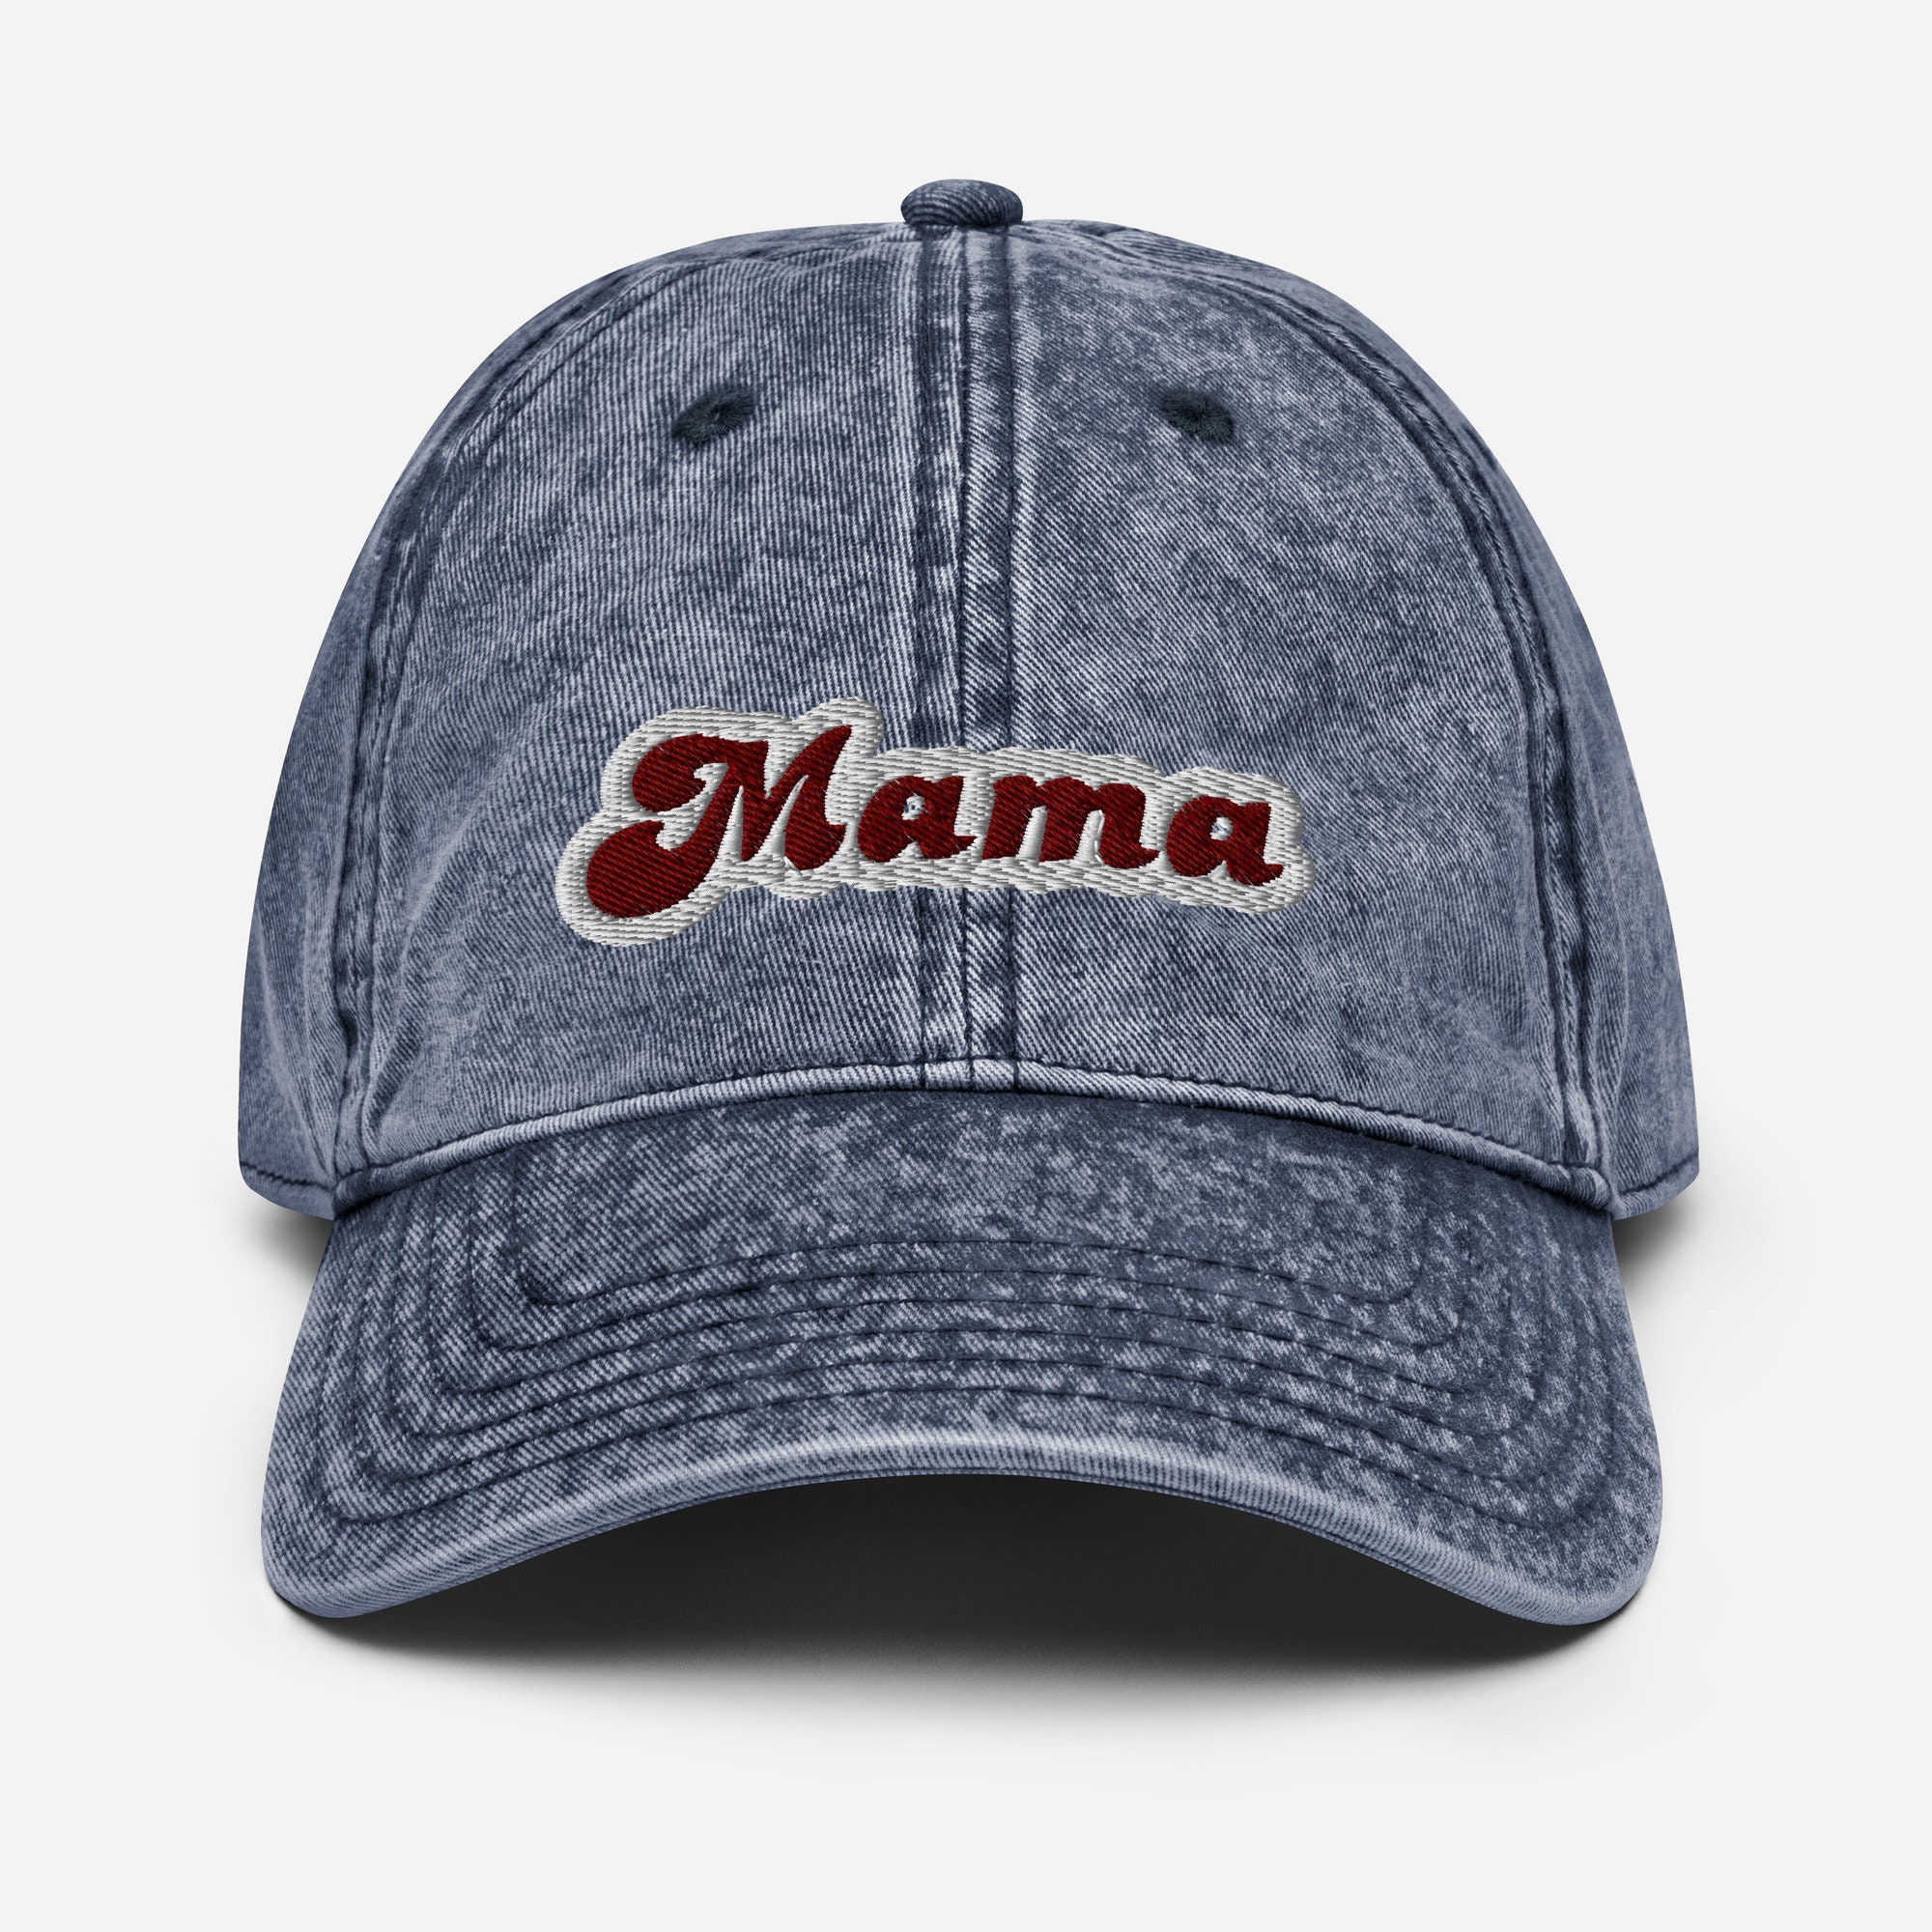 Retro Mama Vintage Cotton Twill Cap - Etsy